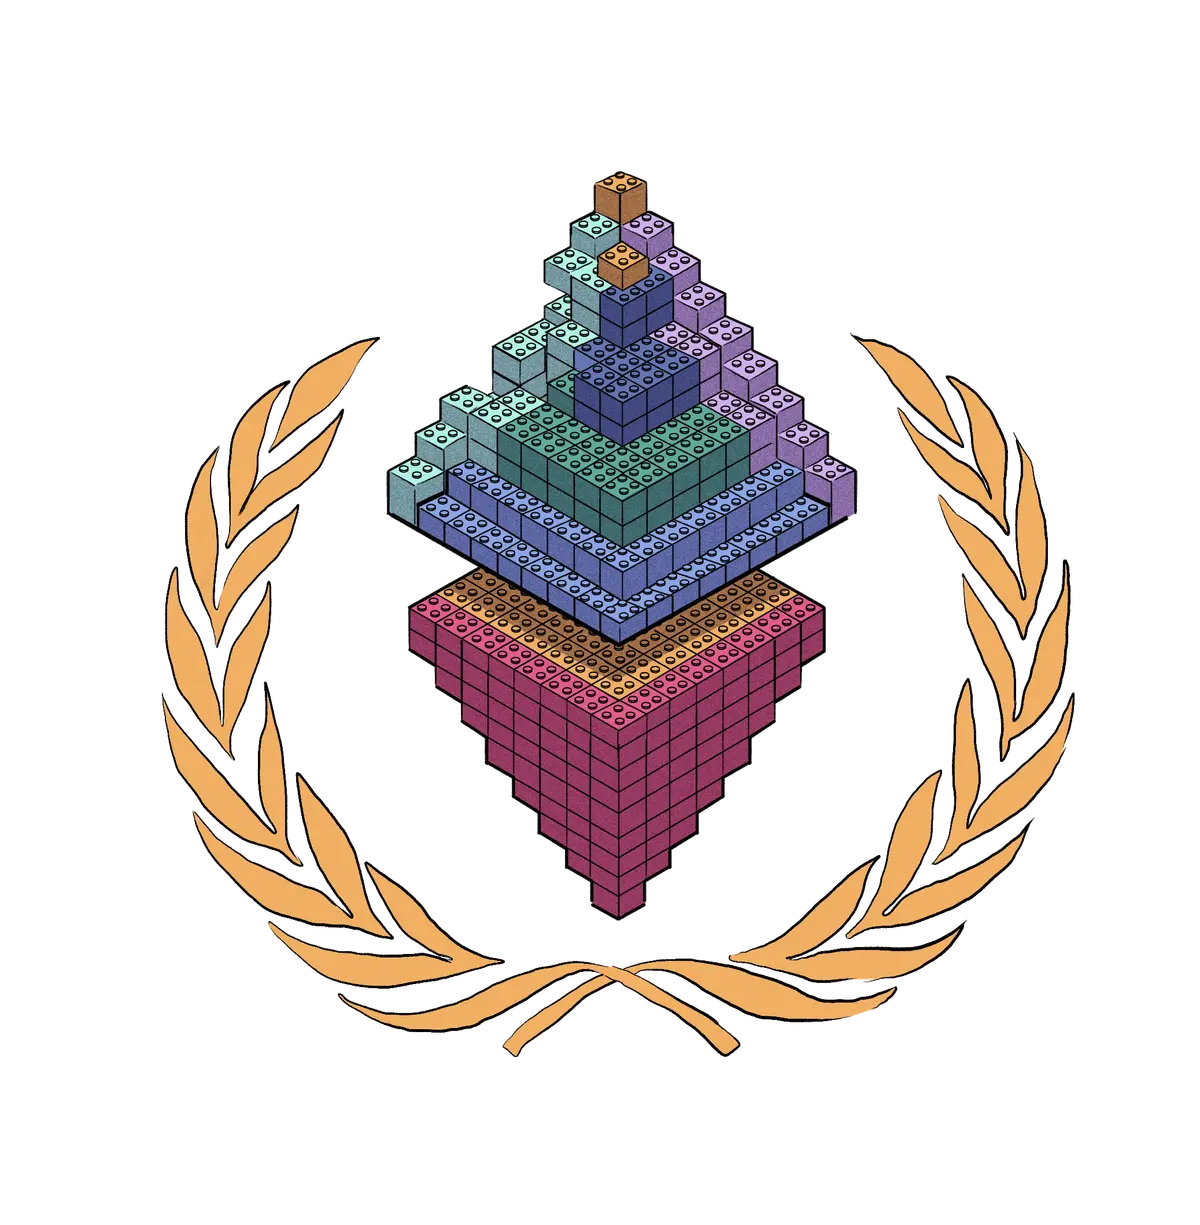 Een Ethereum-logo gemaakt van legostenen.